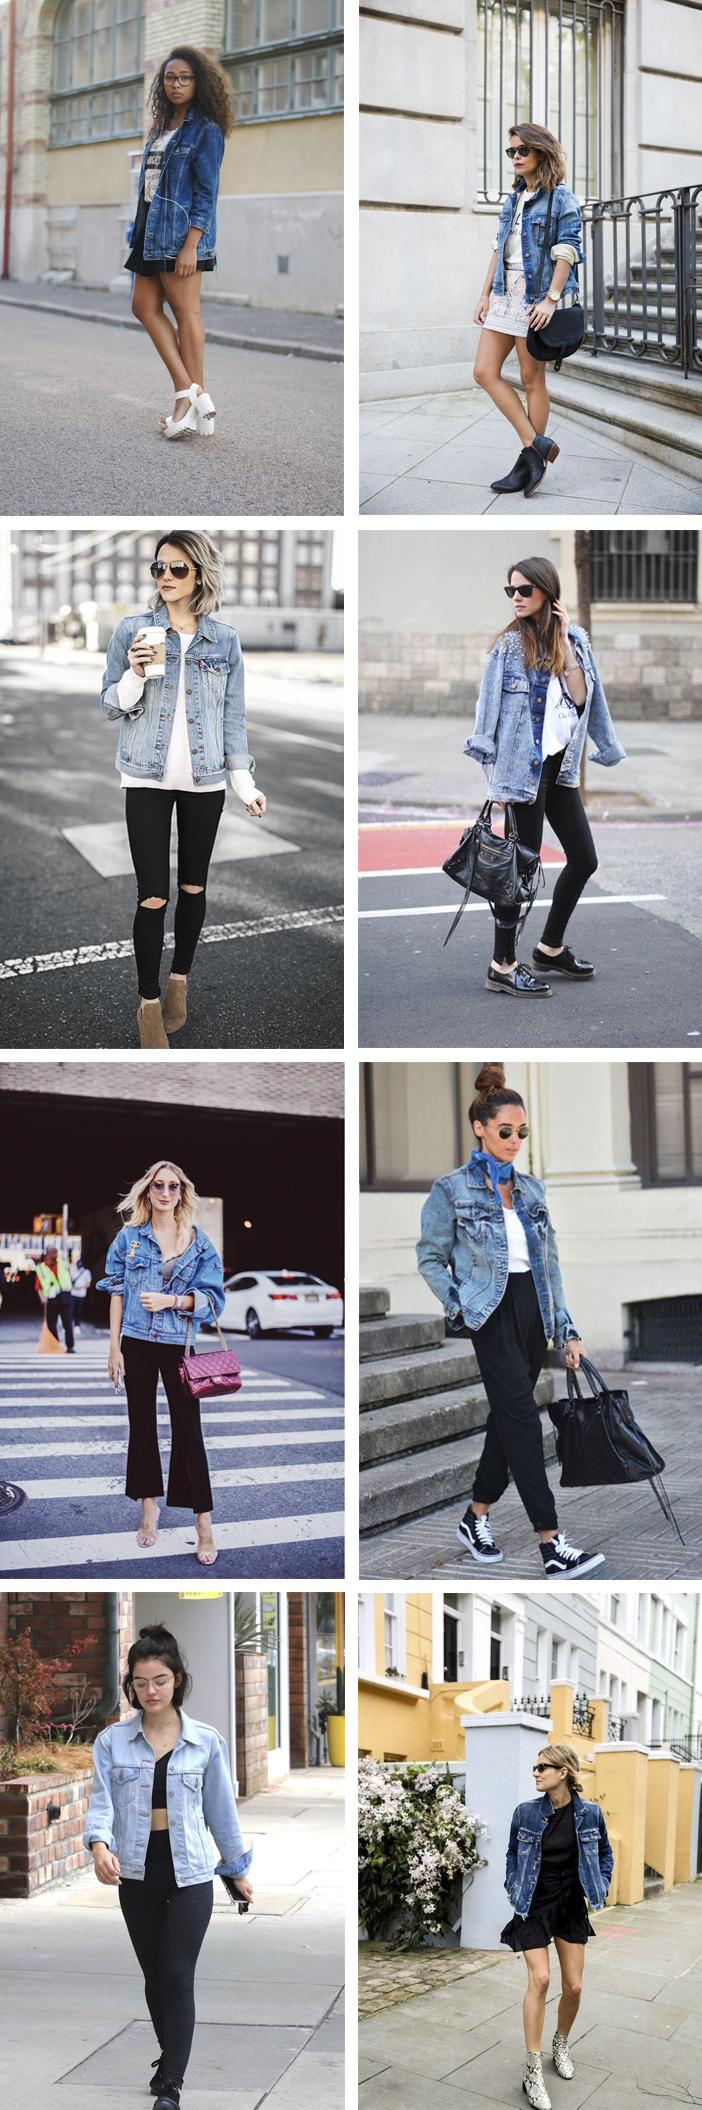 Inspiração - Looks com jaqueta jeans